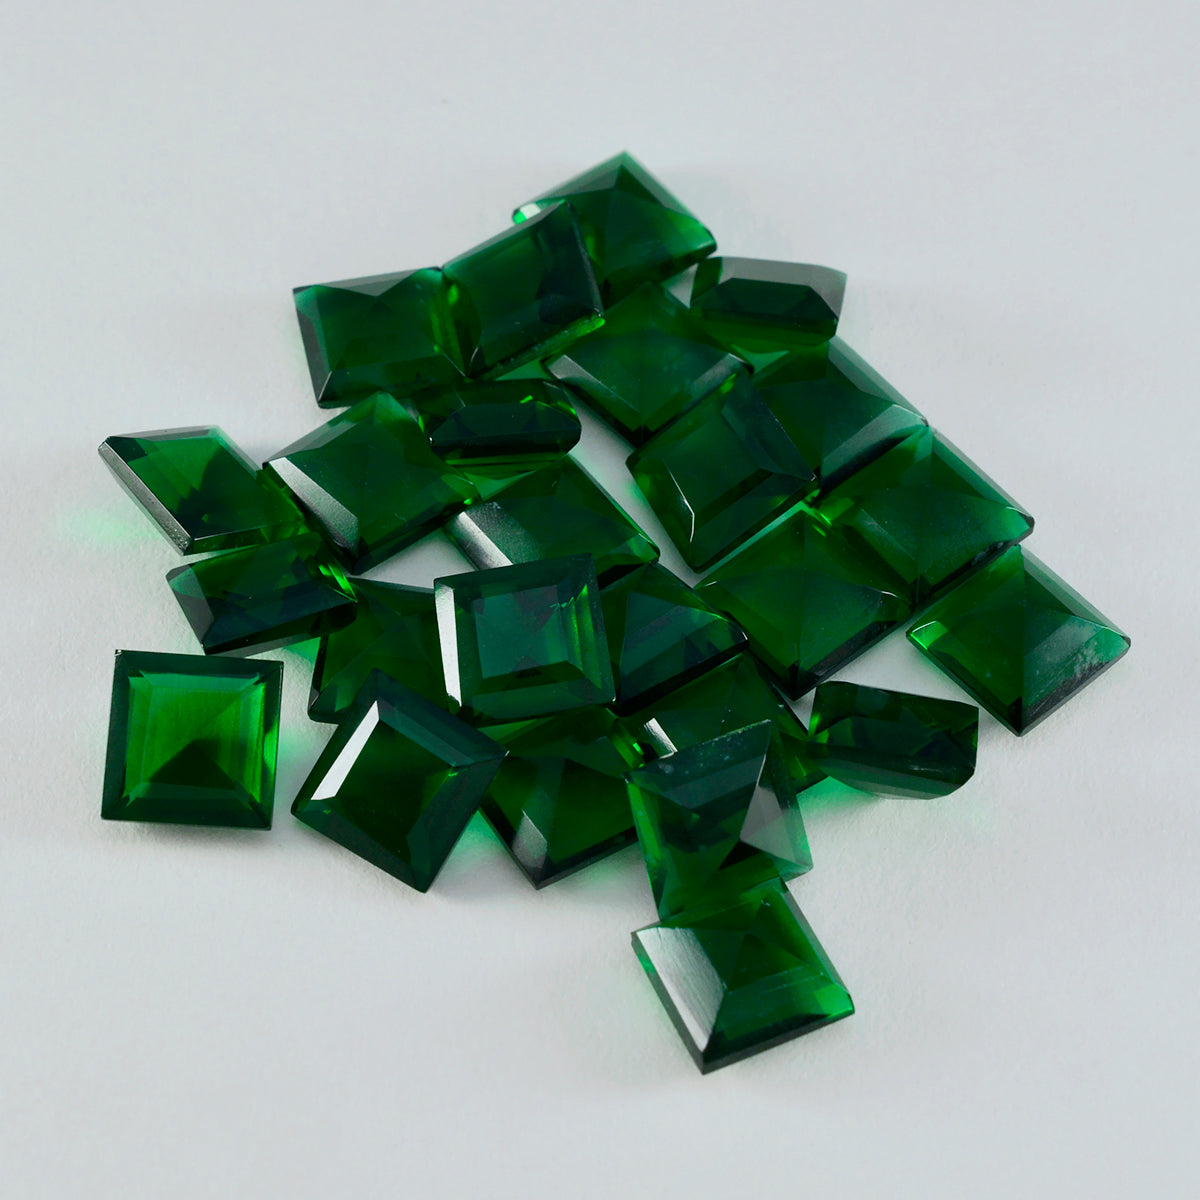 Riyogems 1 Stück grüner Smaragd mit CZ, facettiert, 9 x 9 mm, quadratische Form, Stein von erstaunlicher Qualität